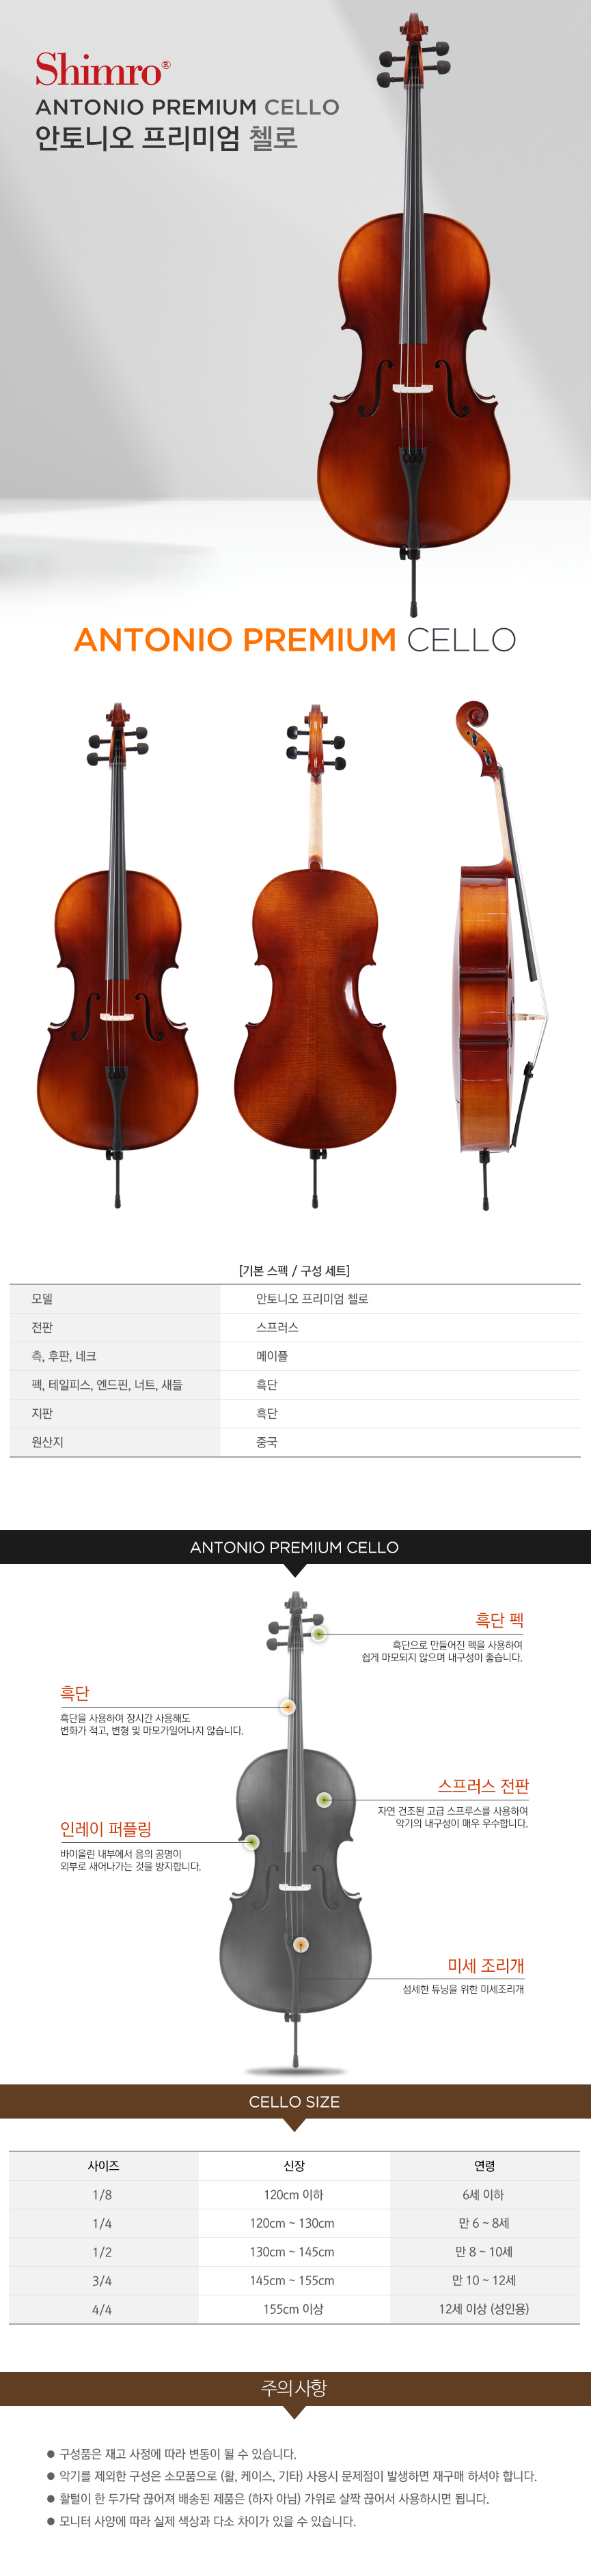 antonio_premium_cello.jpg